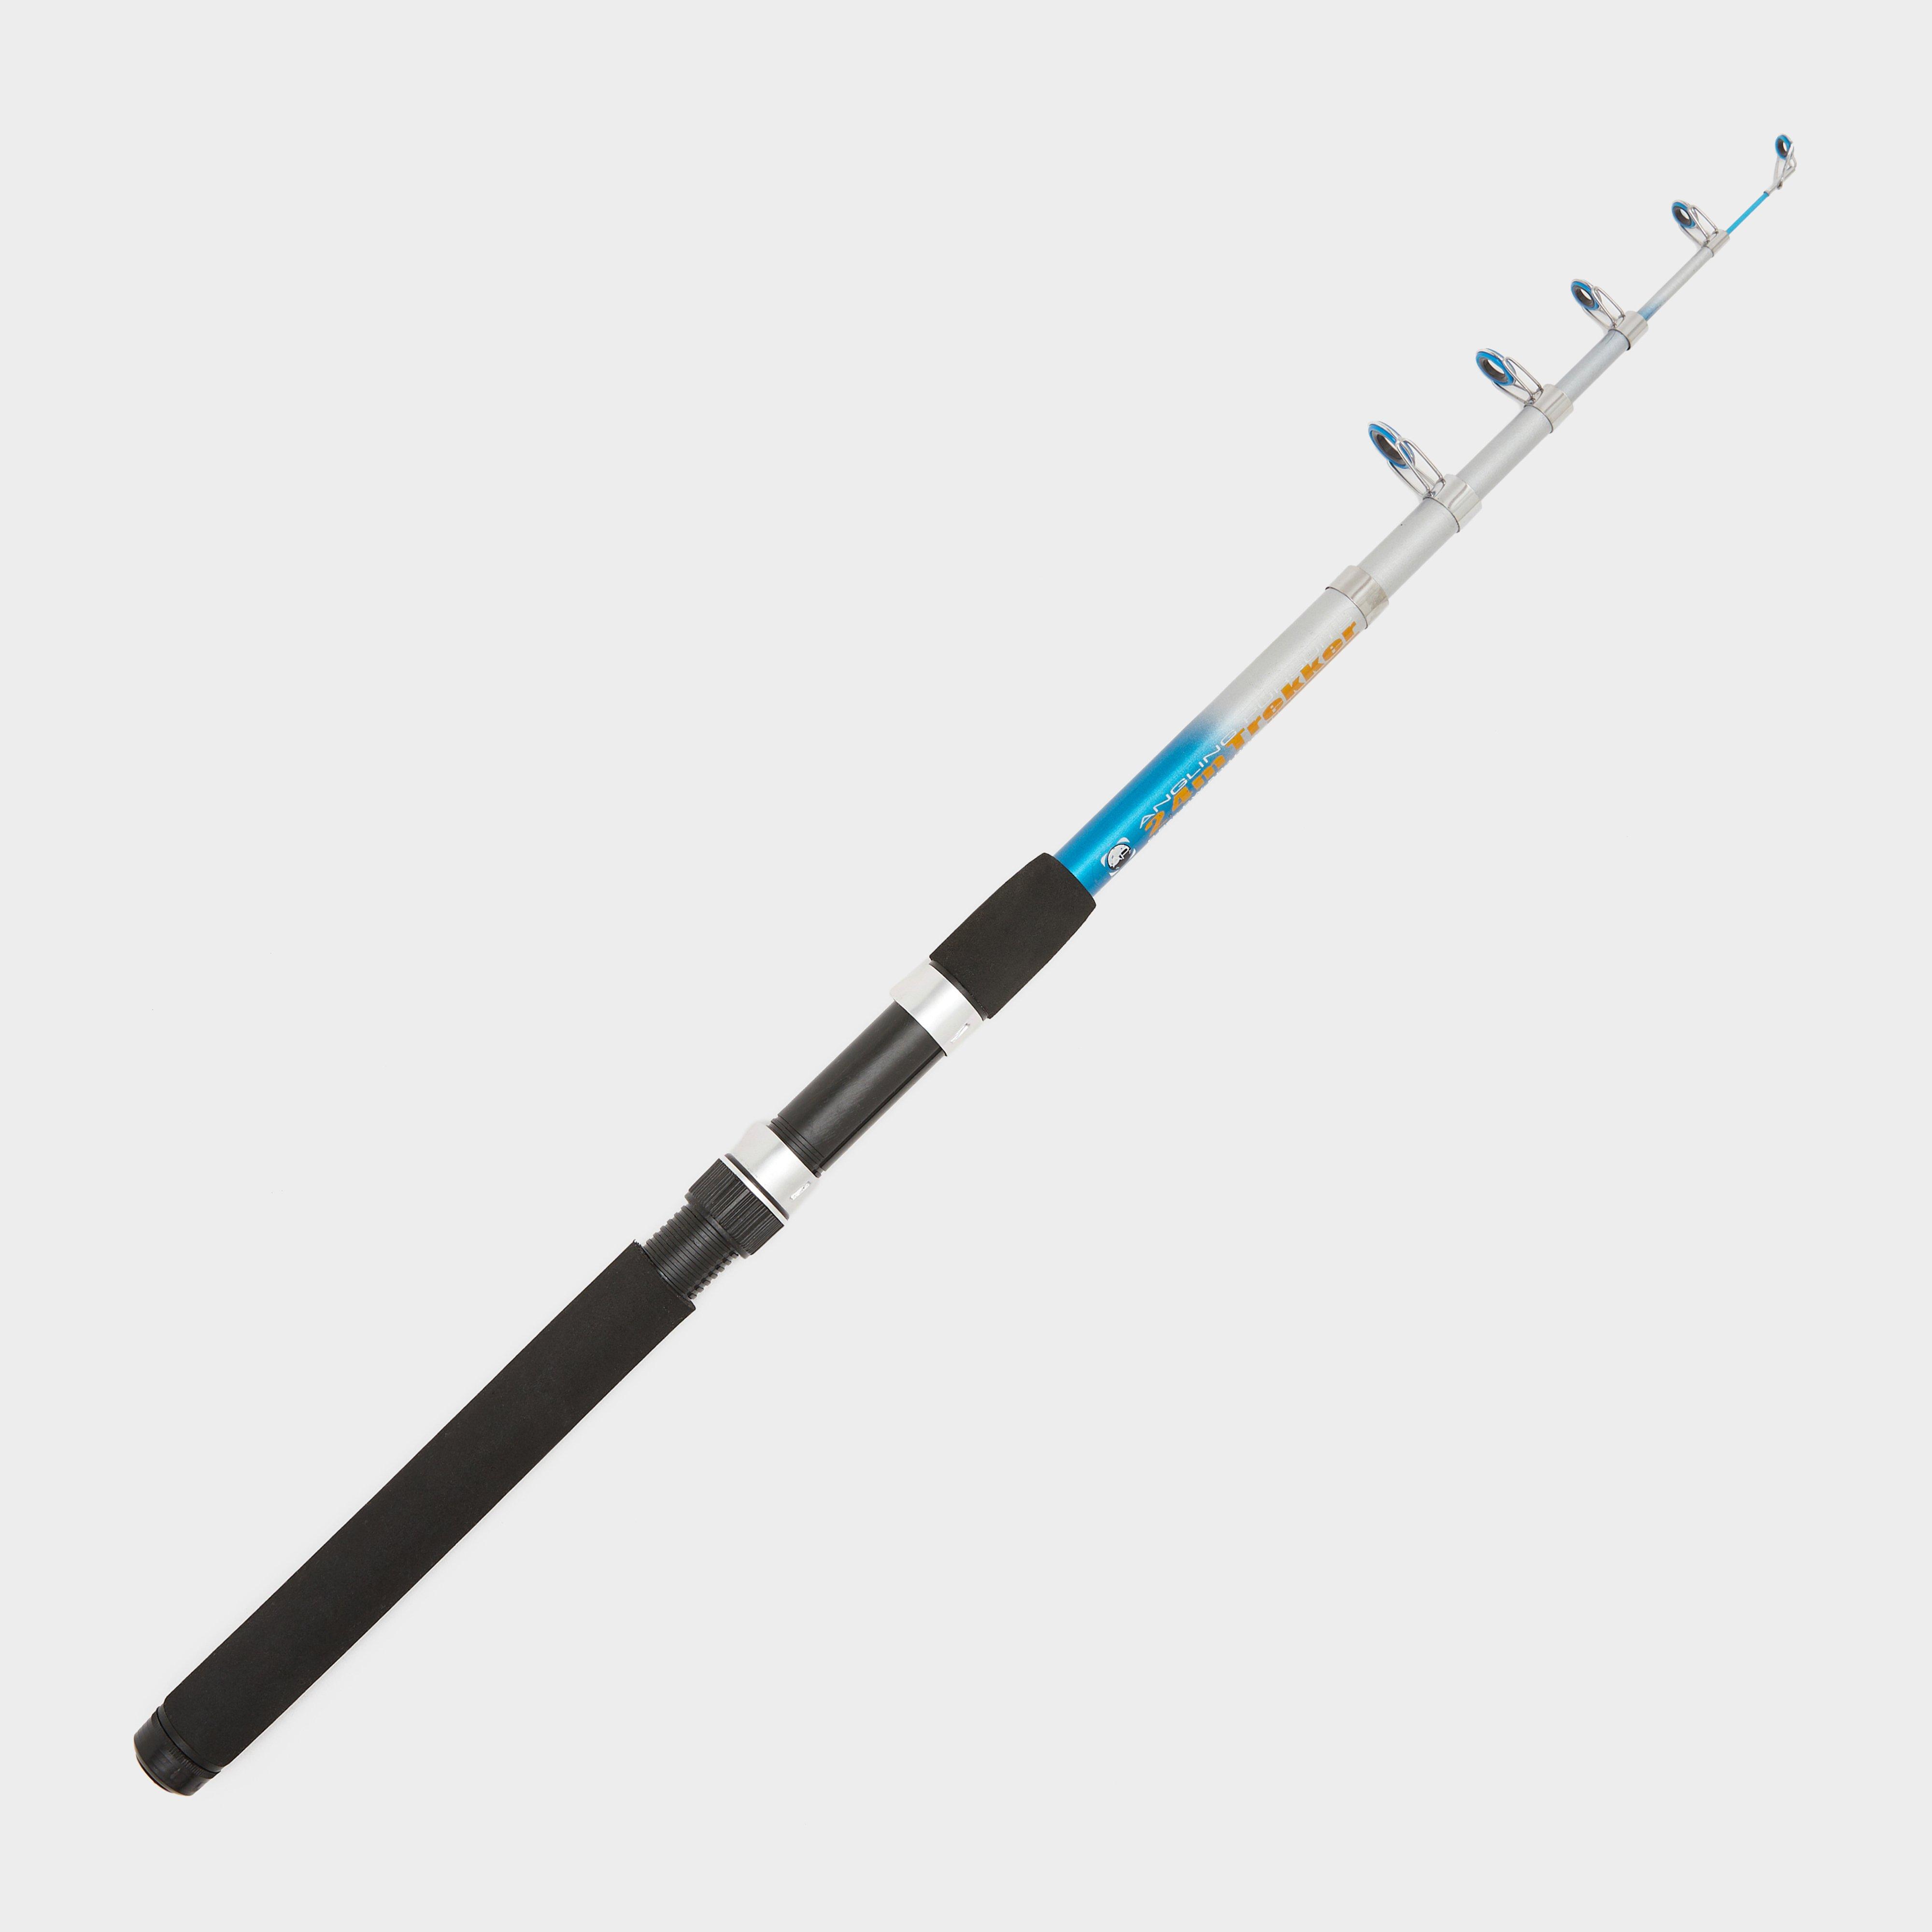 Ngt Trekker Telescopic Fishing Rod 8ft (2.4m)  Black